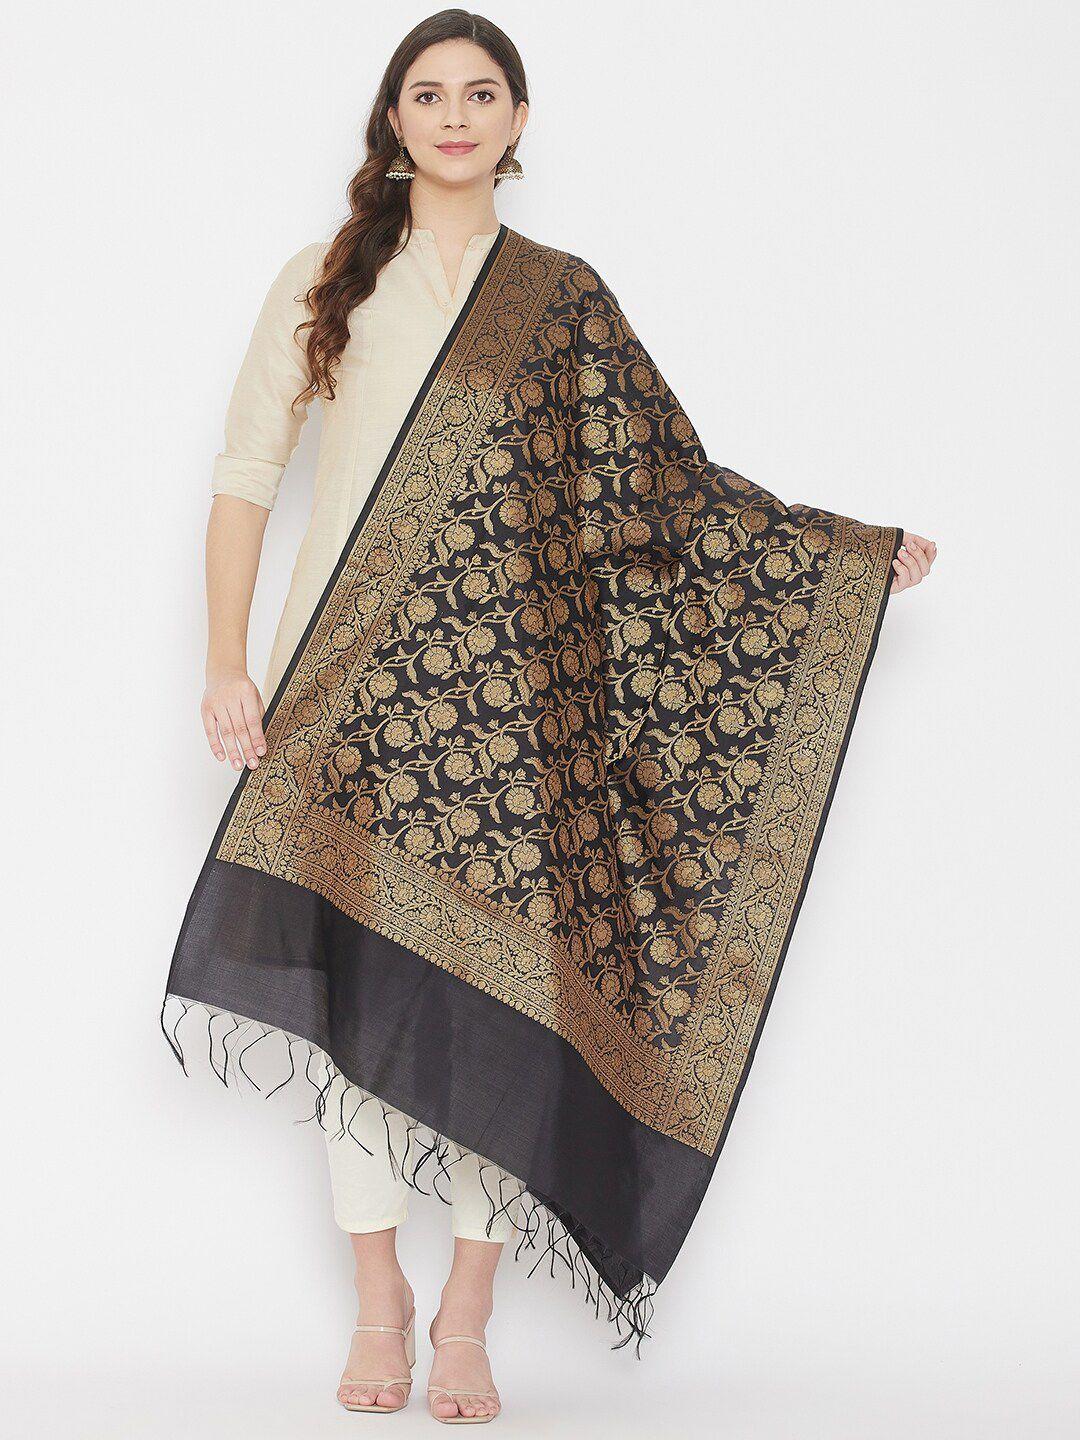 clora creation woven design banarsi silk dupatta with zari